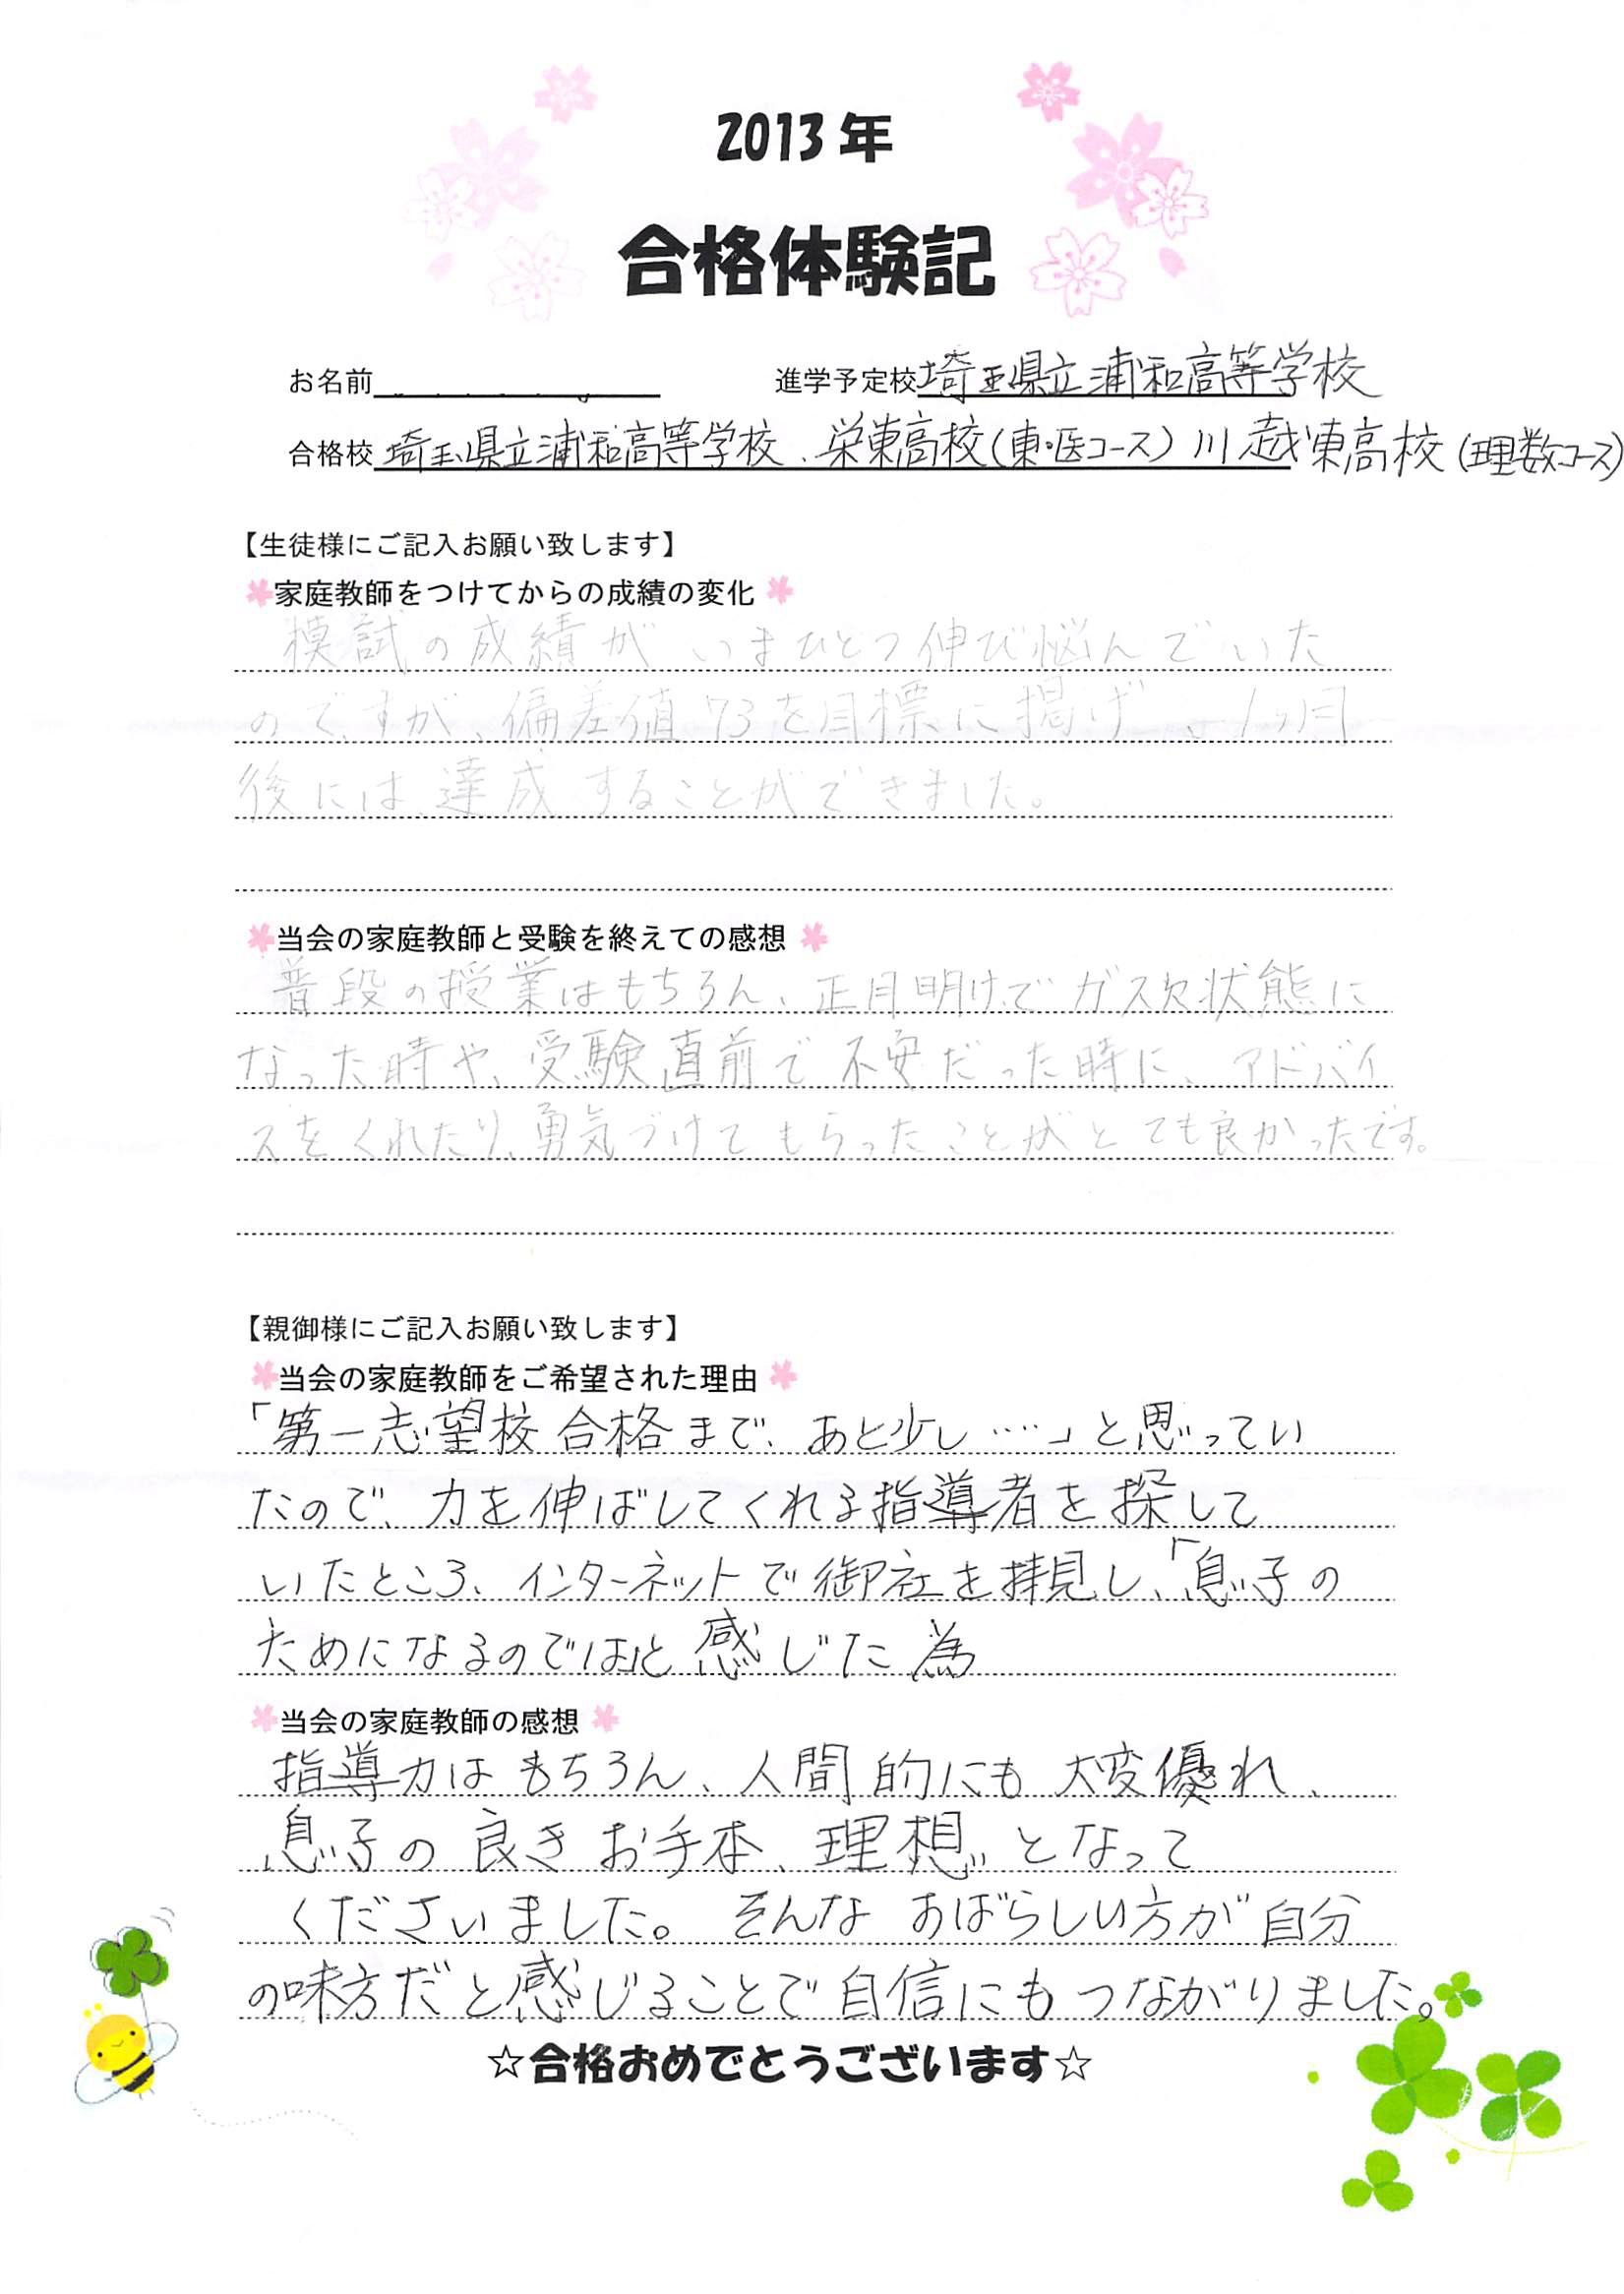 埼玉県立浦和高等学校受験合格を果たしたご家庭様の合格体験記を掲載しております。